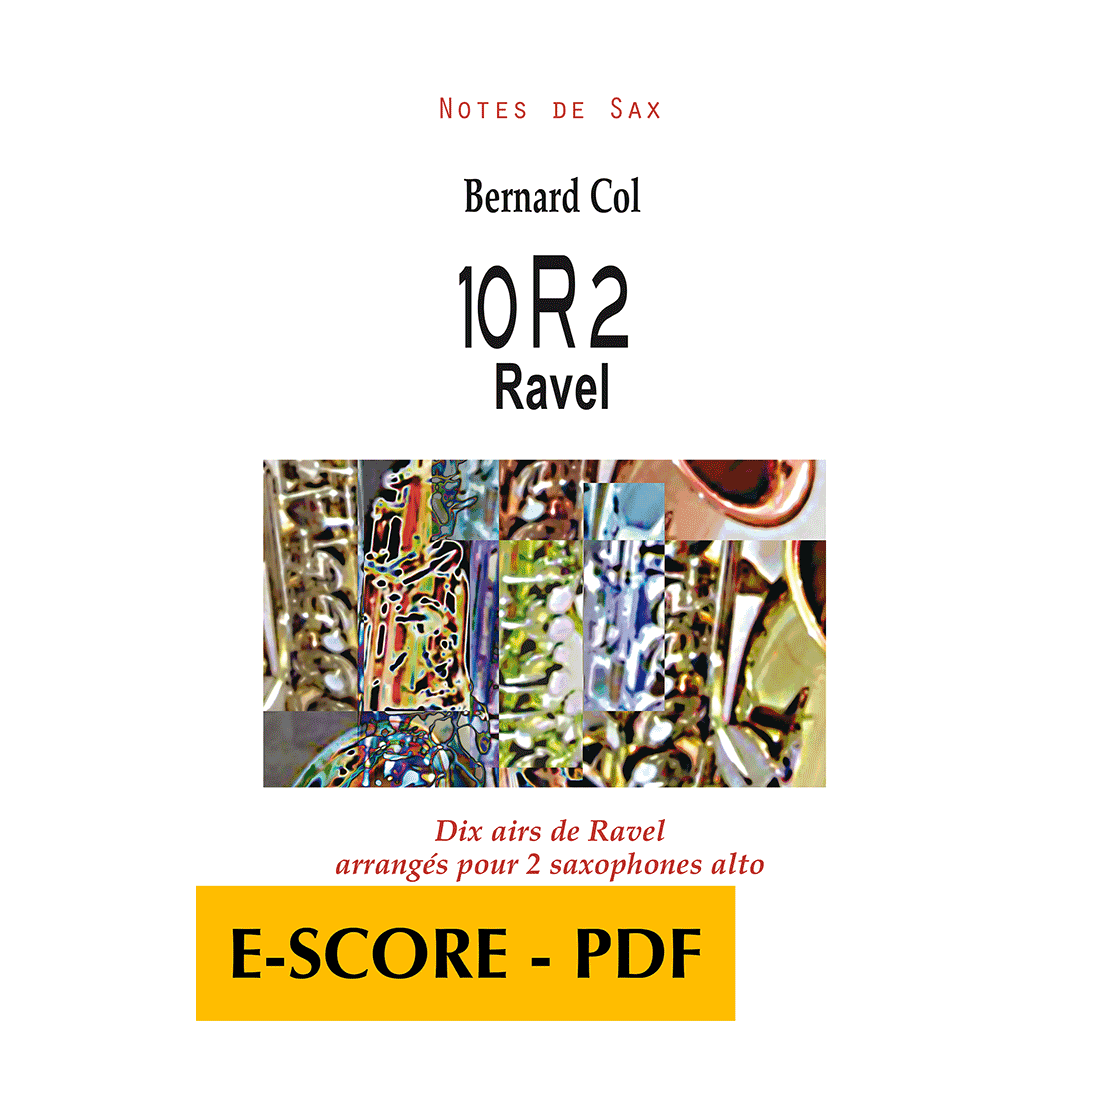 10R2 Ravel - Dix airs de Ravel arrangés pour 2 saxophones alto - E-score PDF